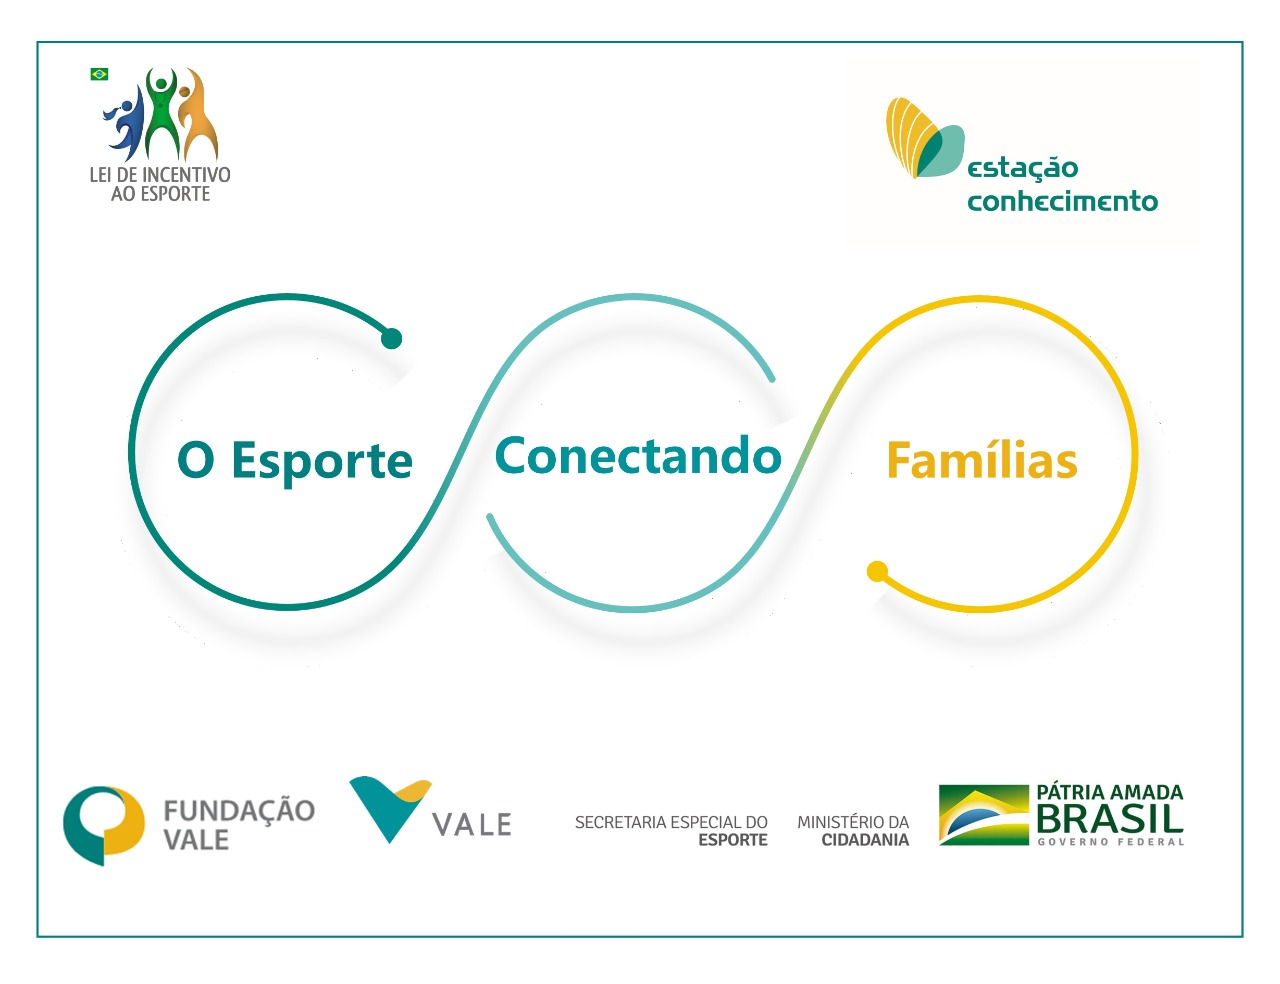 Fundação CASA cria canal direto com familiares – Secretaria da